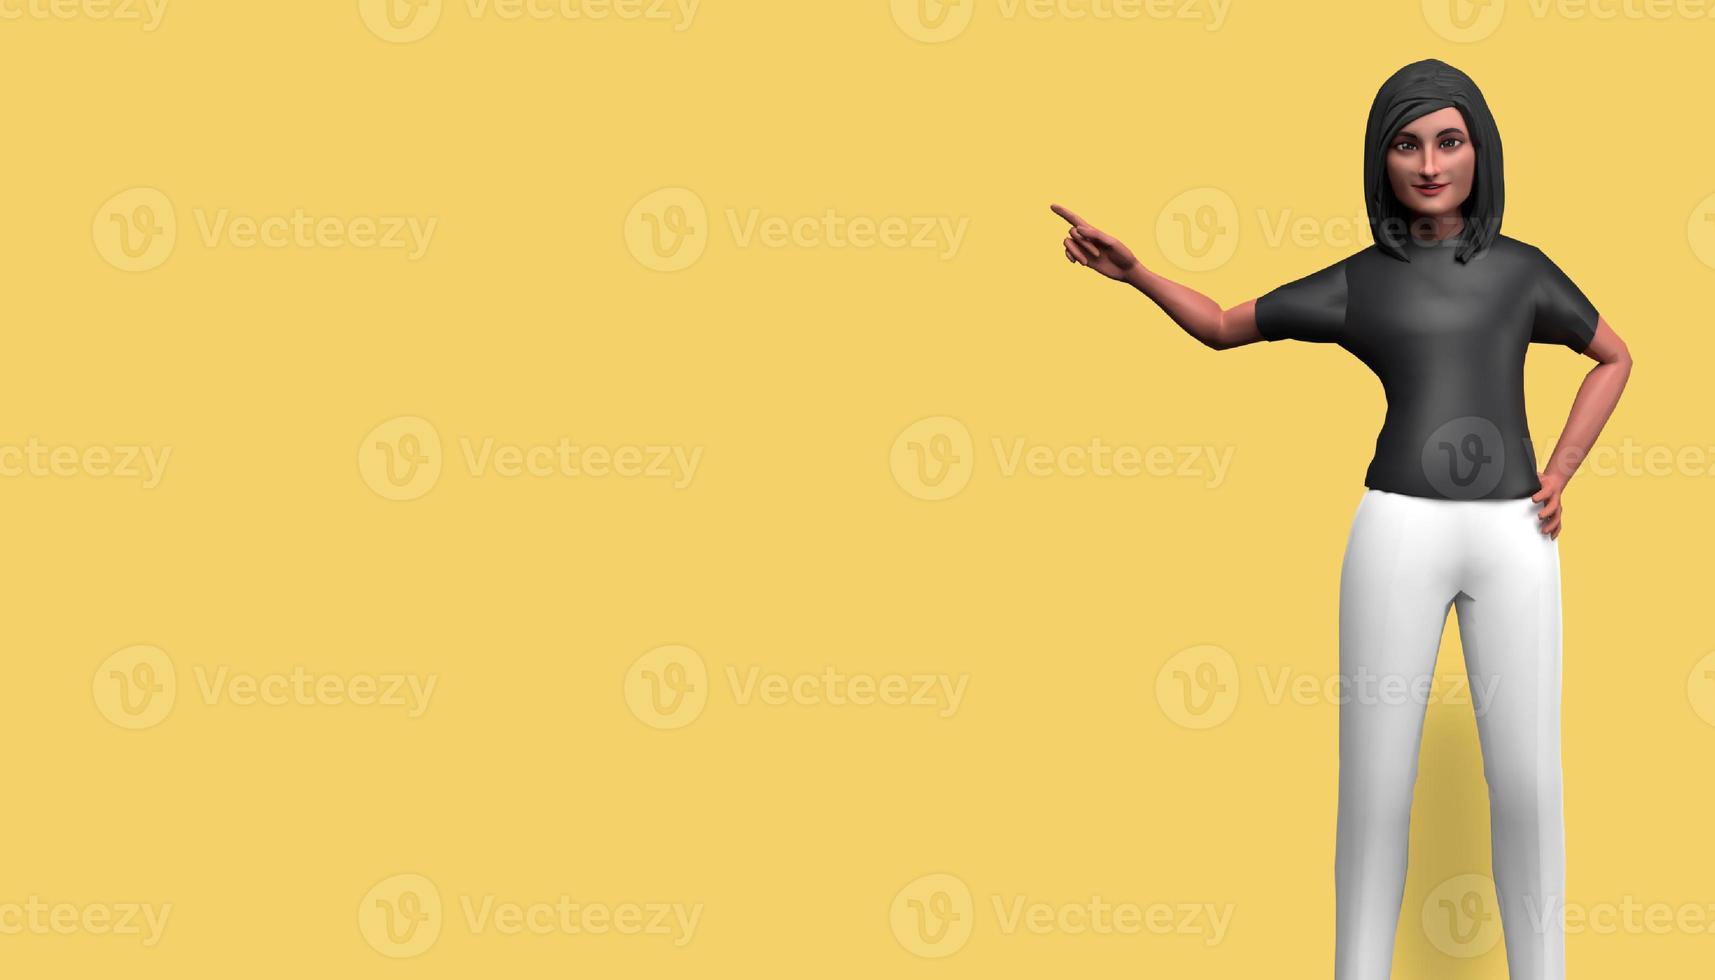 Personaje de dibujos animados de ilustración 3d, hermosa chica señalando a la izquierda, feliz y sonriente, de pie frente a un fondo amarillo foto